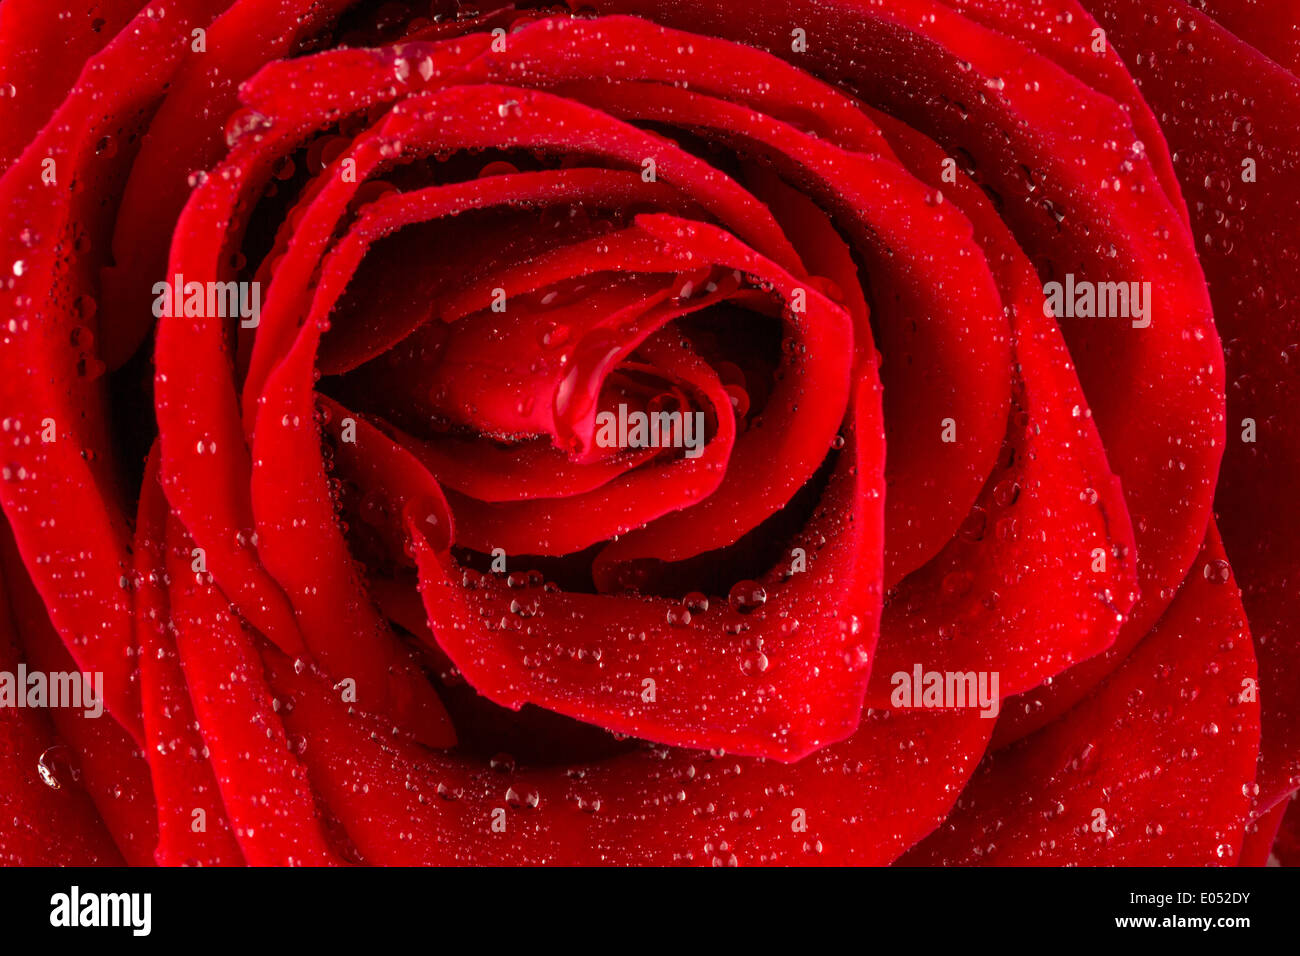 Une rose rouge avec goutte d'eau sur l'oranger., Eine rote Rose mit Wasser aus Tropfen auf der Bluete. Banque D'Images